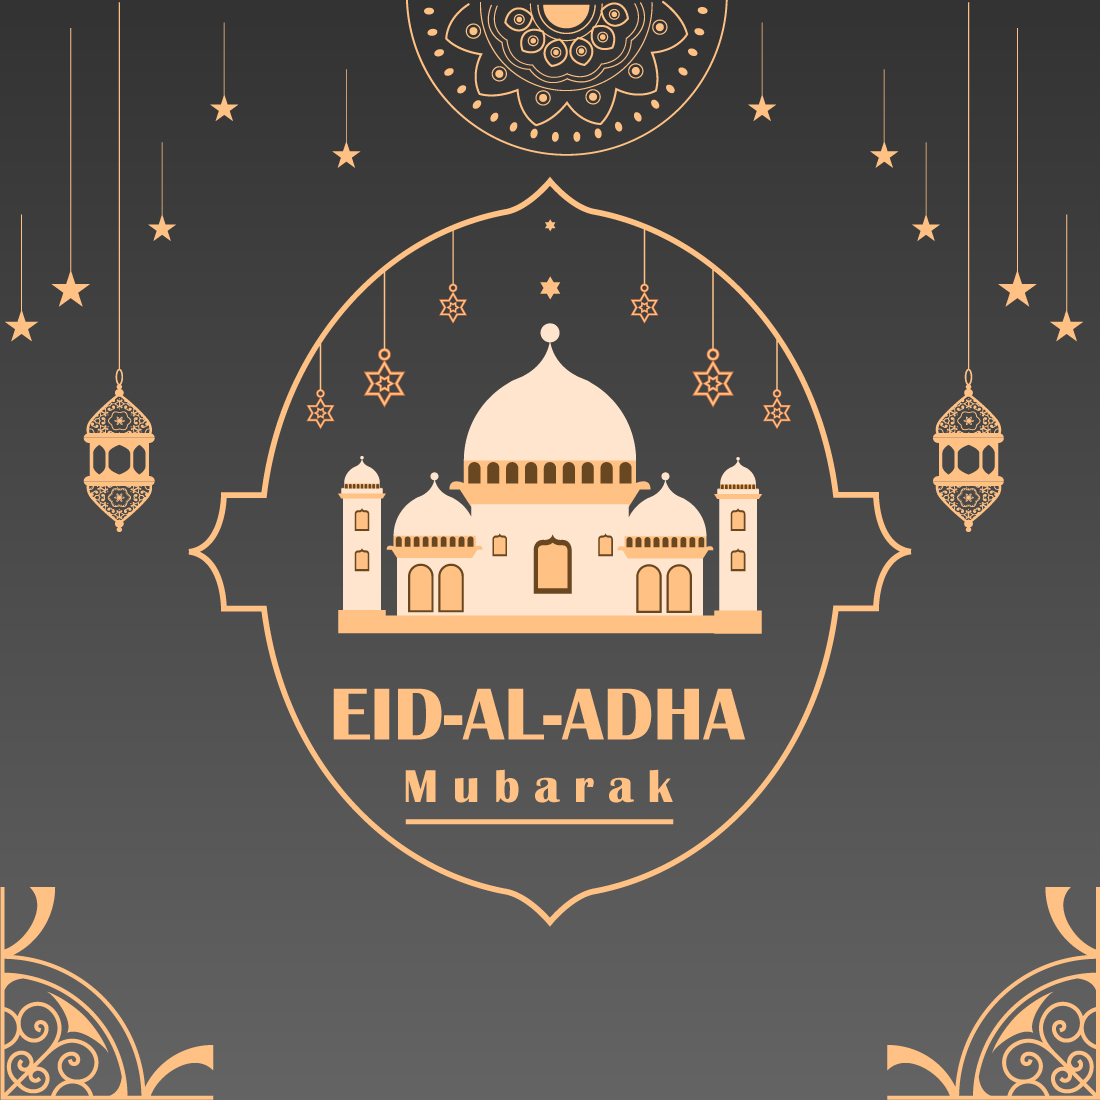 Eid al Adha Poster Design cover image.